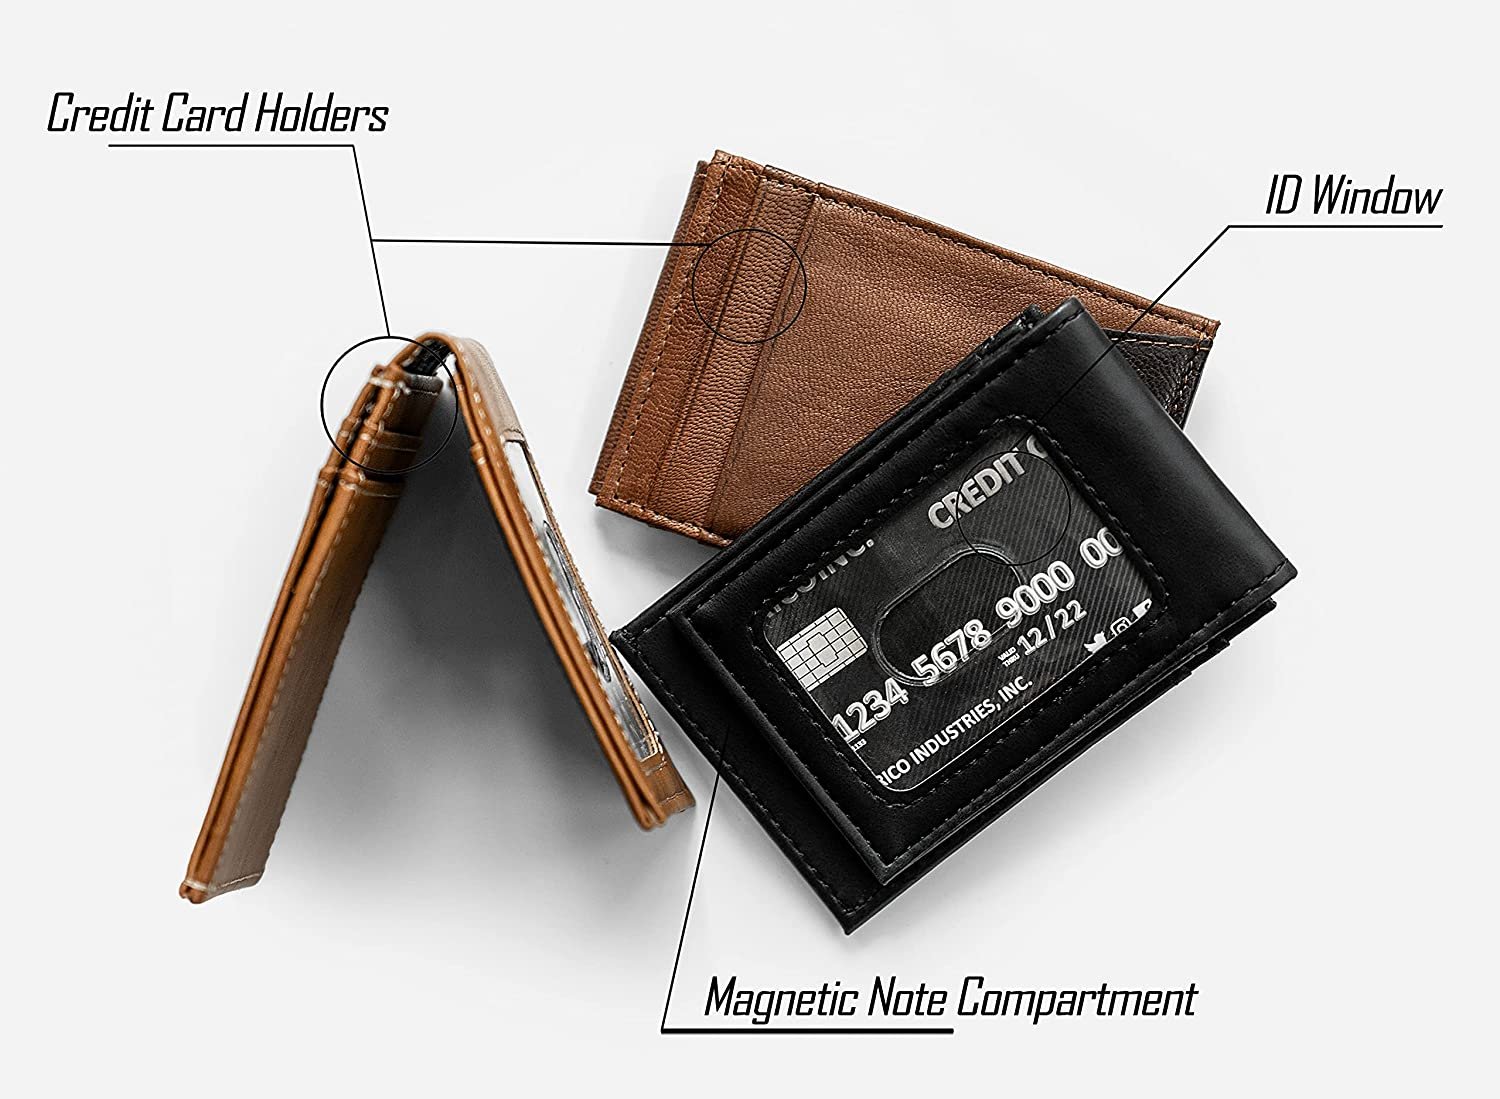 Cleveland Browns Premium Brown Leather Wallet, Front Pocket Magnetic Money Clip, Laser Engraved, Vegan